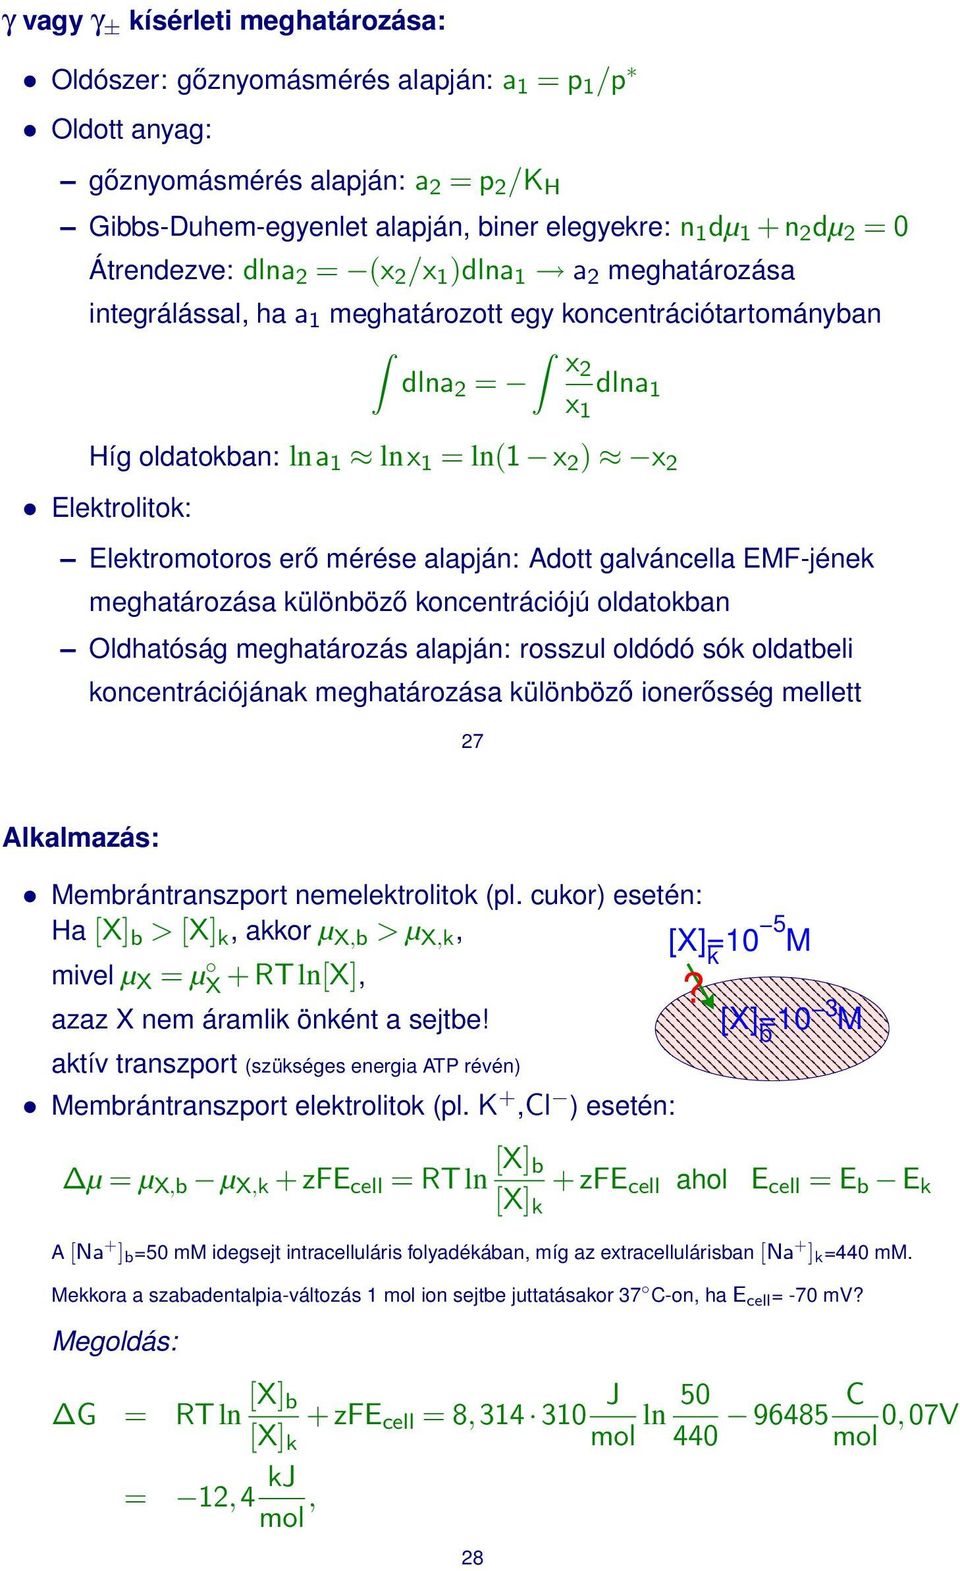 Elektroltok: Elektromotoros erő mérése alapján: Adott galváncella EMF-jének meghatározása különböző koncentrácójú oldatokban ldhatóság meghatározás alapján: rosszul oldódó sók oldatbel